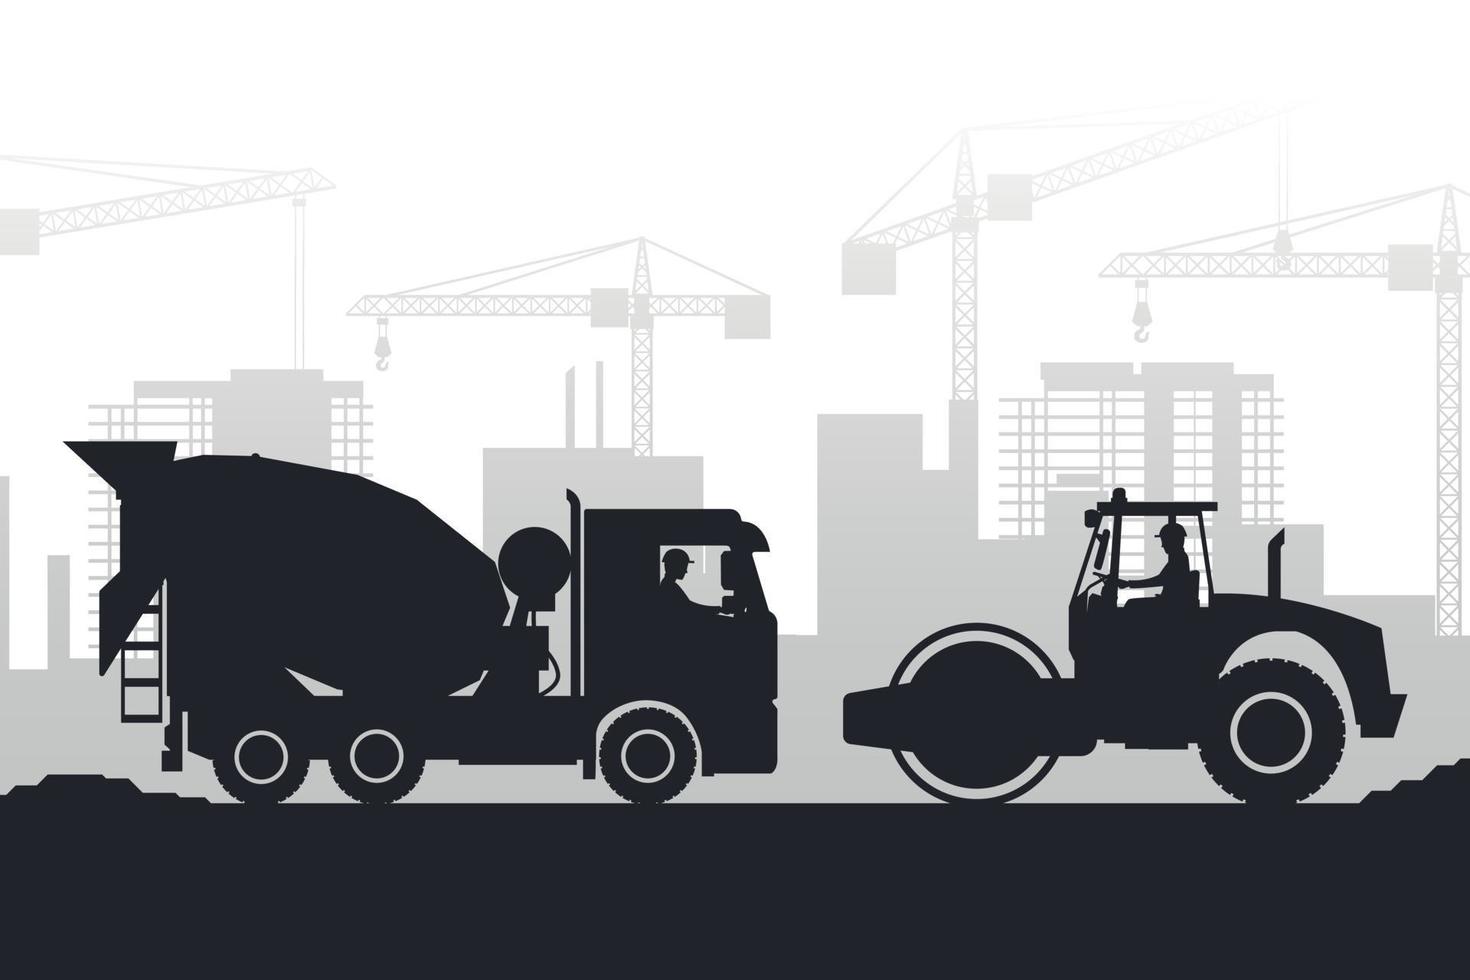 arrière-plan silhouette de machinerie lourde avec camion malaxeur à béton et compacteur de sol dans une ville en construction vecteur